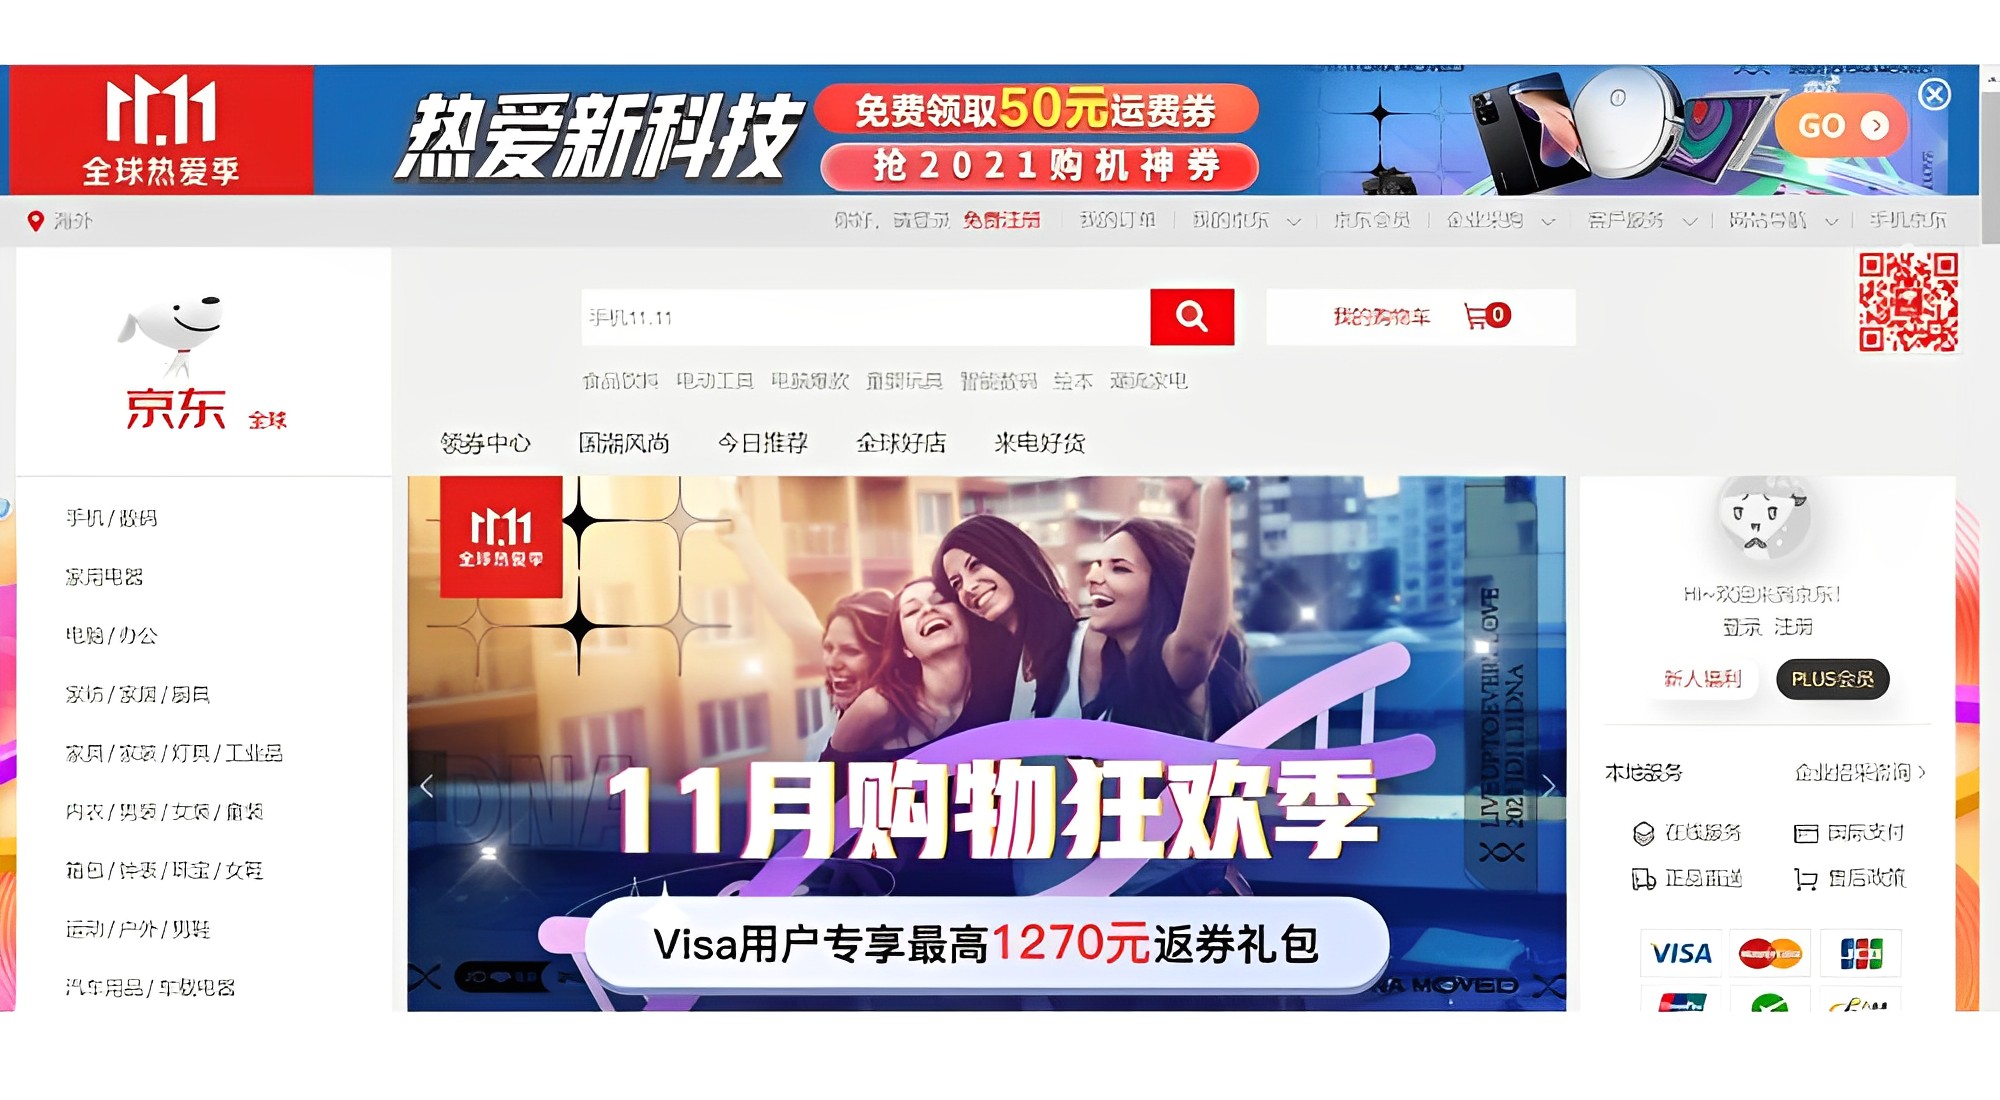 Ngày Độc thân là sự kiện mua sắm trực tuyến lớn nhất ở Trung Quốc và thế giới